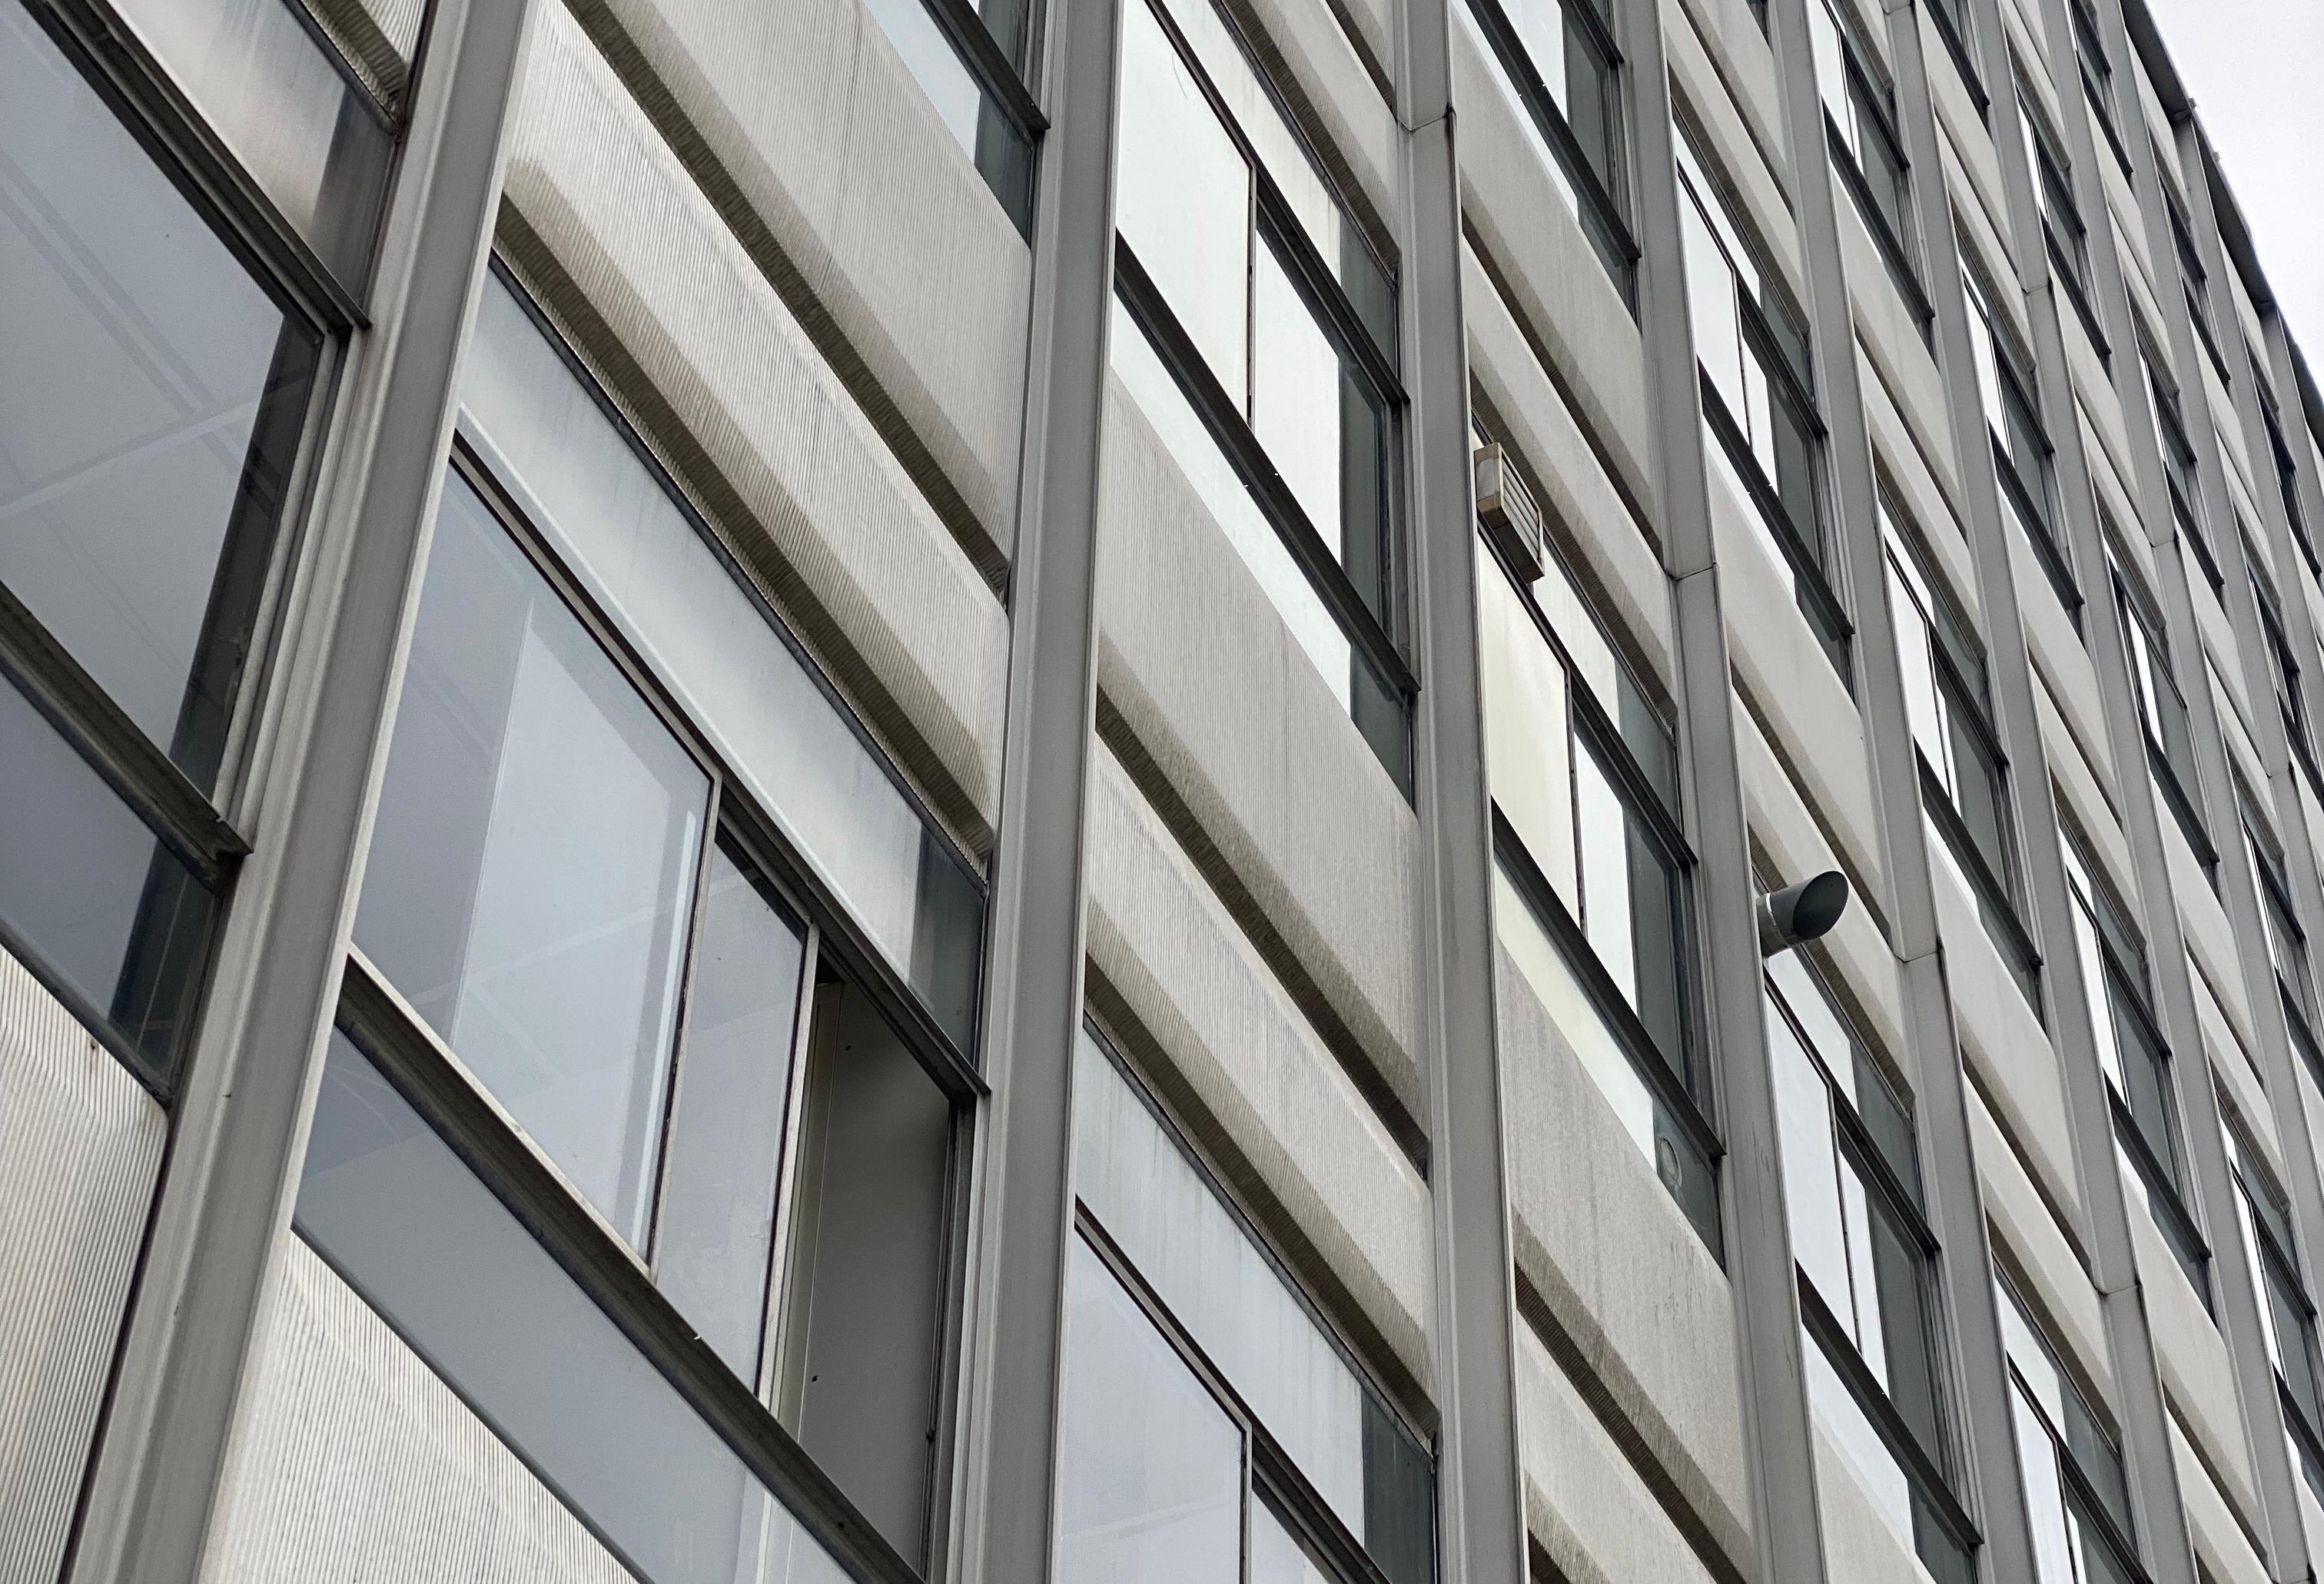 Architektonisches, geripptes Fassadenelement, entworfen von Jean Prouve und hergestellt von C.I.M.T (Compagnie industrielle du matériel de transport) in Neuilly sur Seine, Frankreich, 1960. Dieses Panel fand im Rahmen des Institute National des